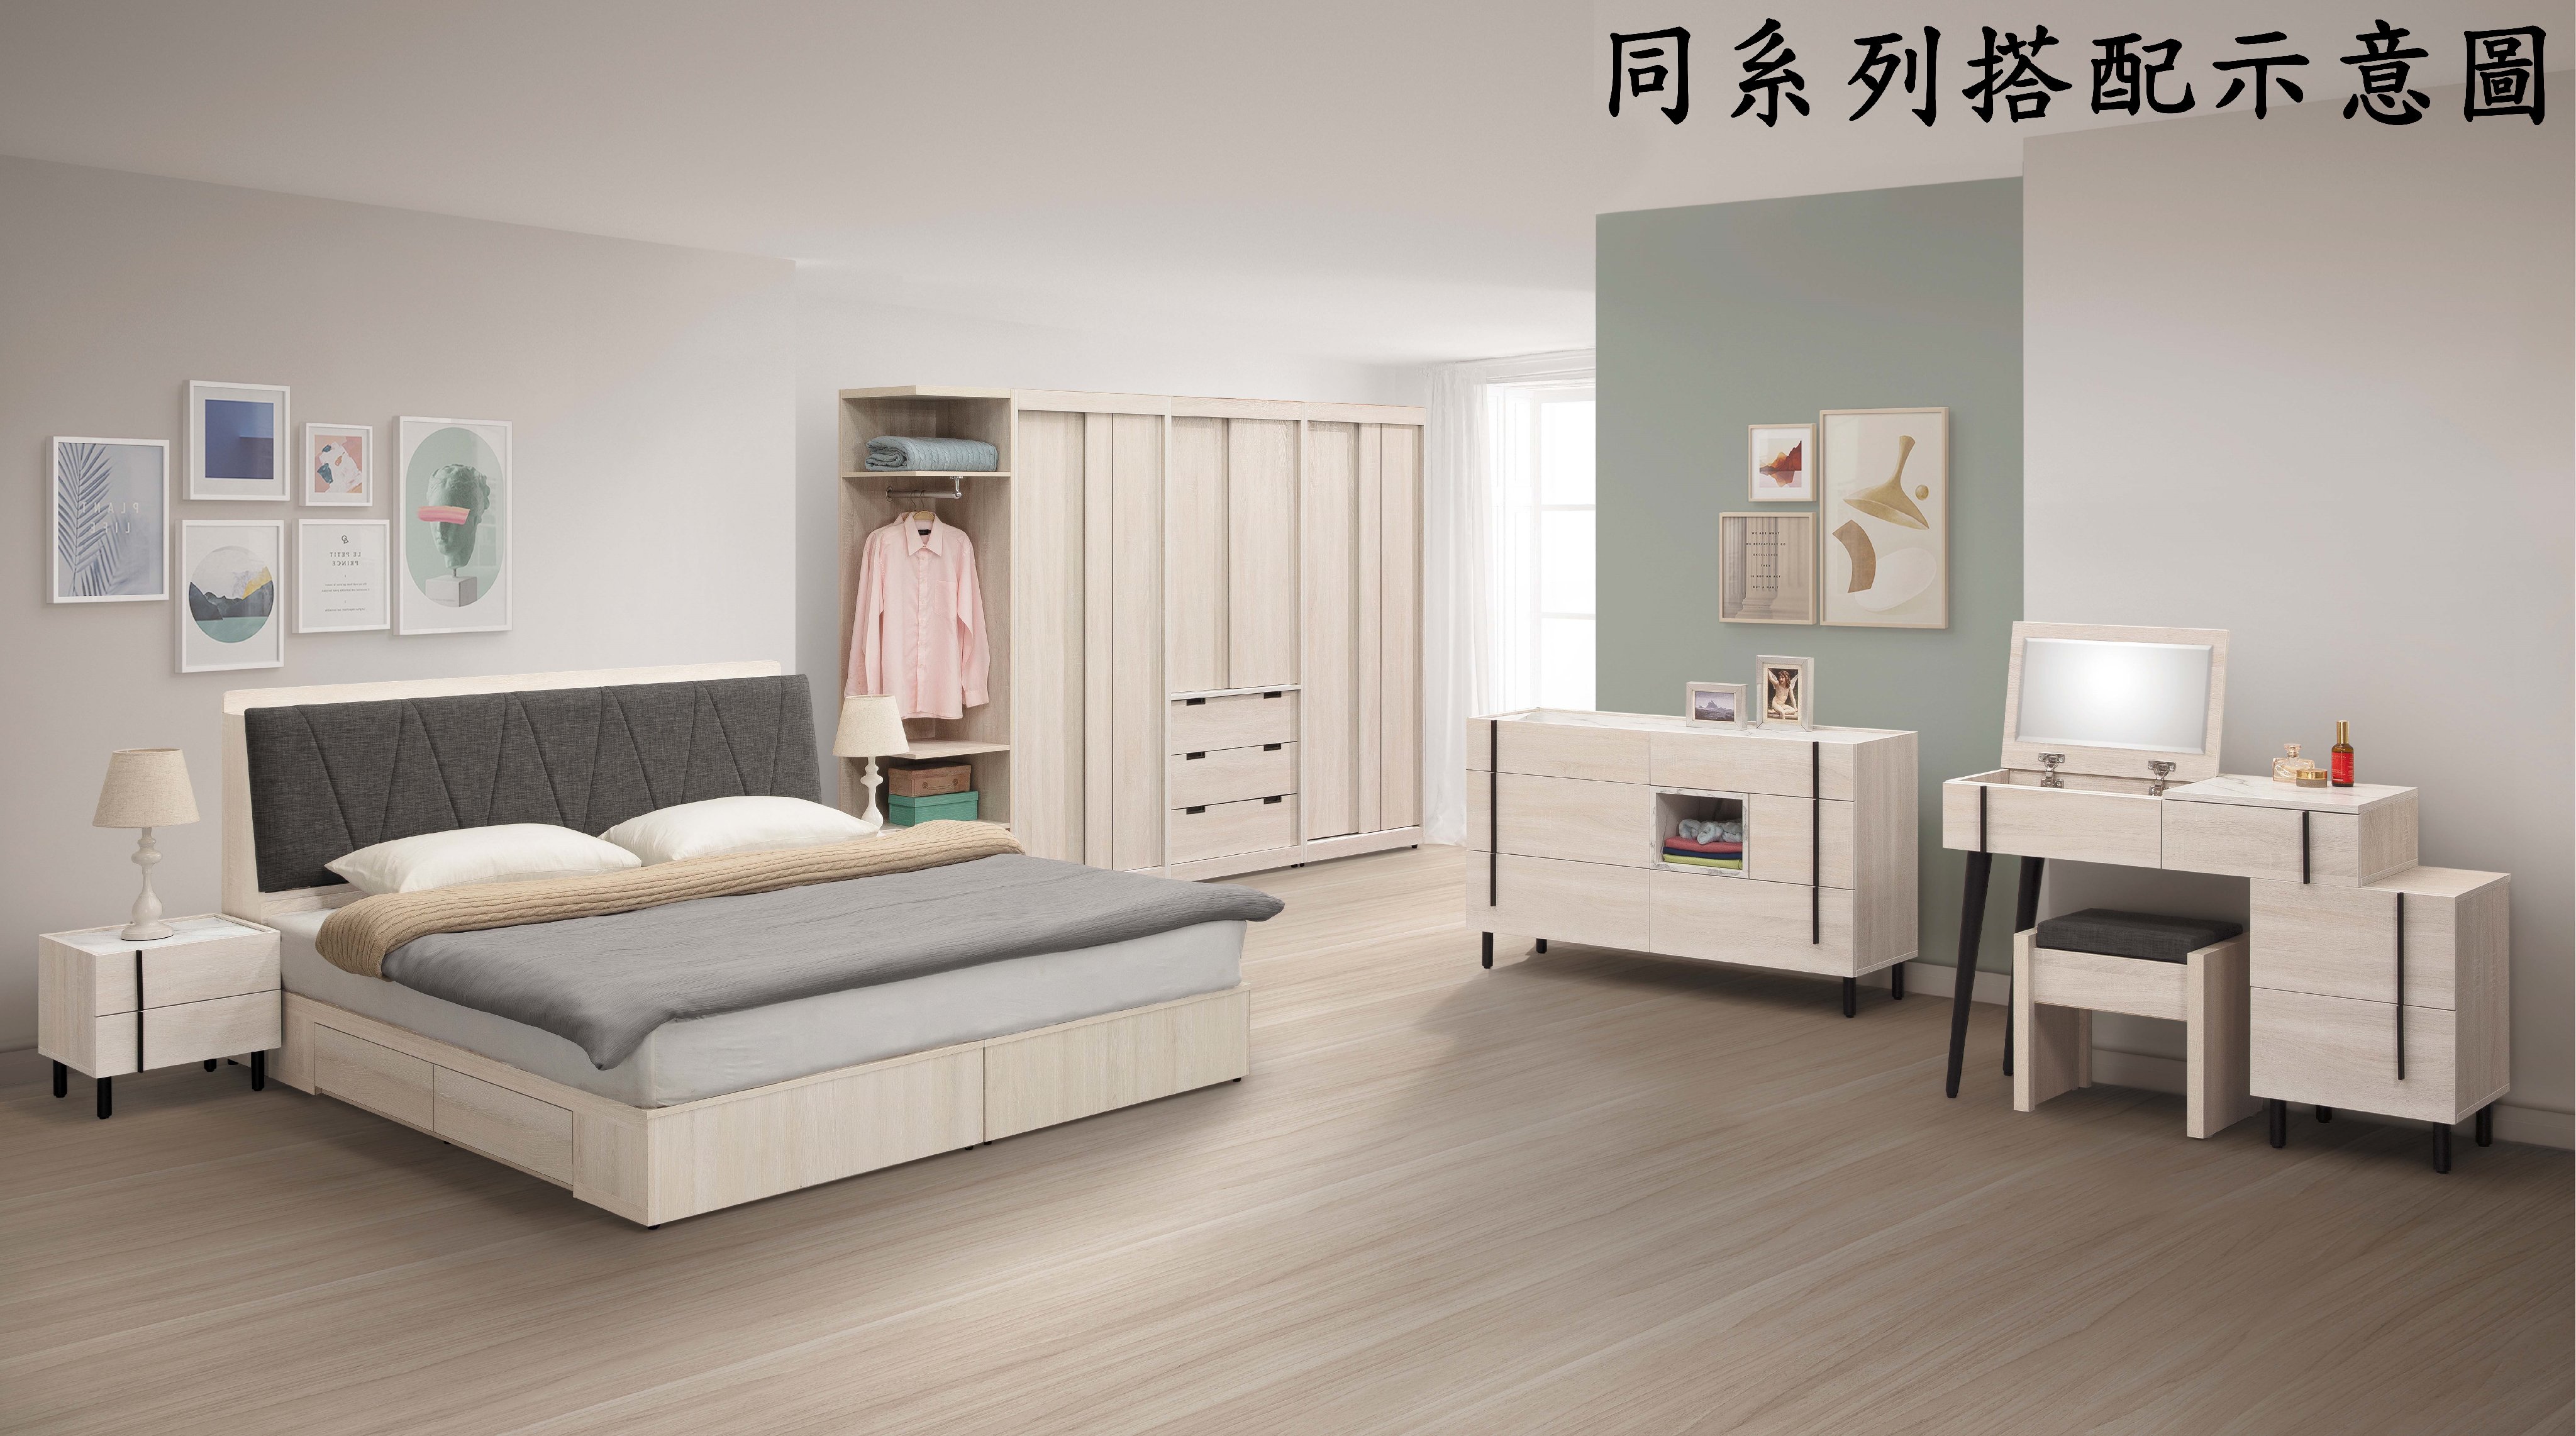 【風禾家具】HY-71-1@AKL北歐風橡木白色1.5尺床頭櫃【台中市區免運送到家】床邊櫃 收納櫃 置物櫃 台灣製造傢俱